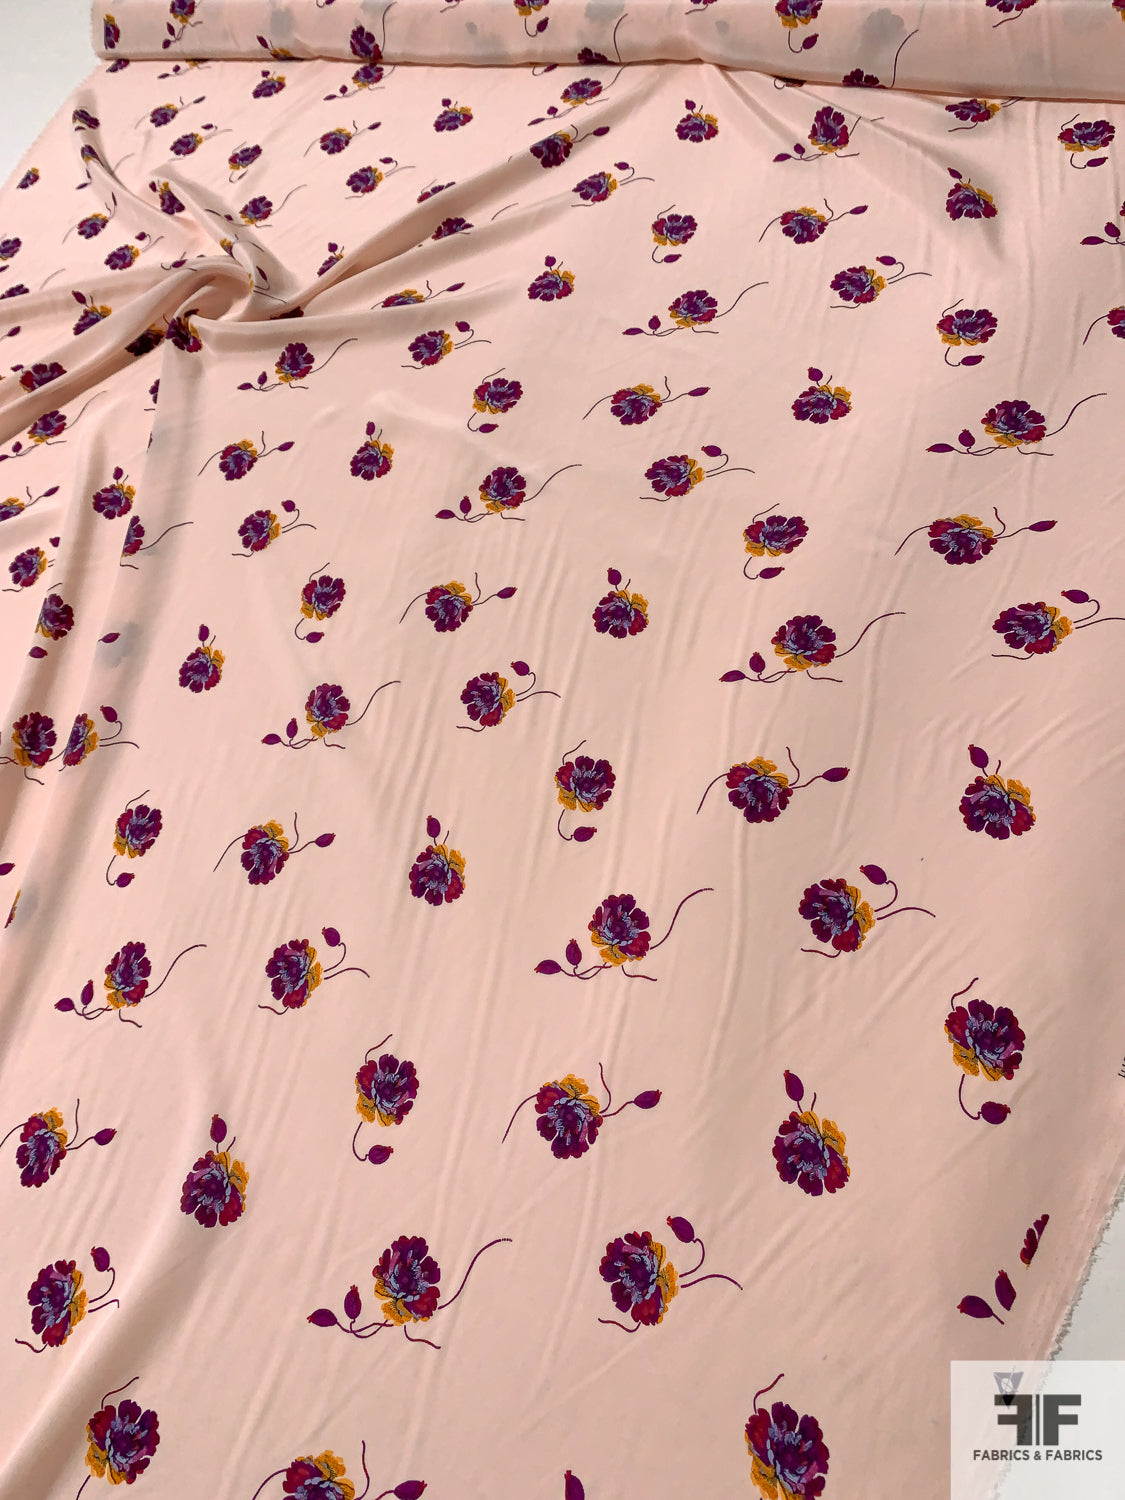 Atelier Sea Collection Fabric Silk Crepe De Chine Alta Moda, Fabric In  Red,pink,gold Colours, Inkjet Technique,Limited Quantity.Colour#2 ⋆ Gucci  Silk Twill